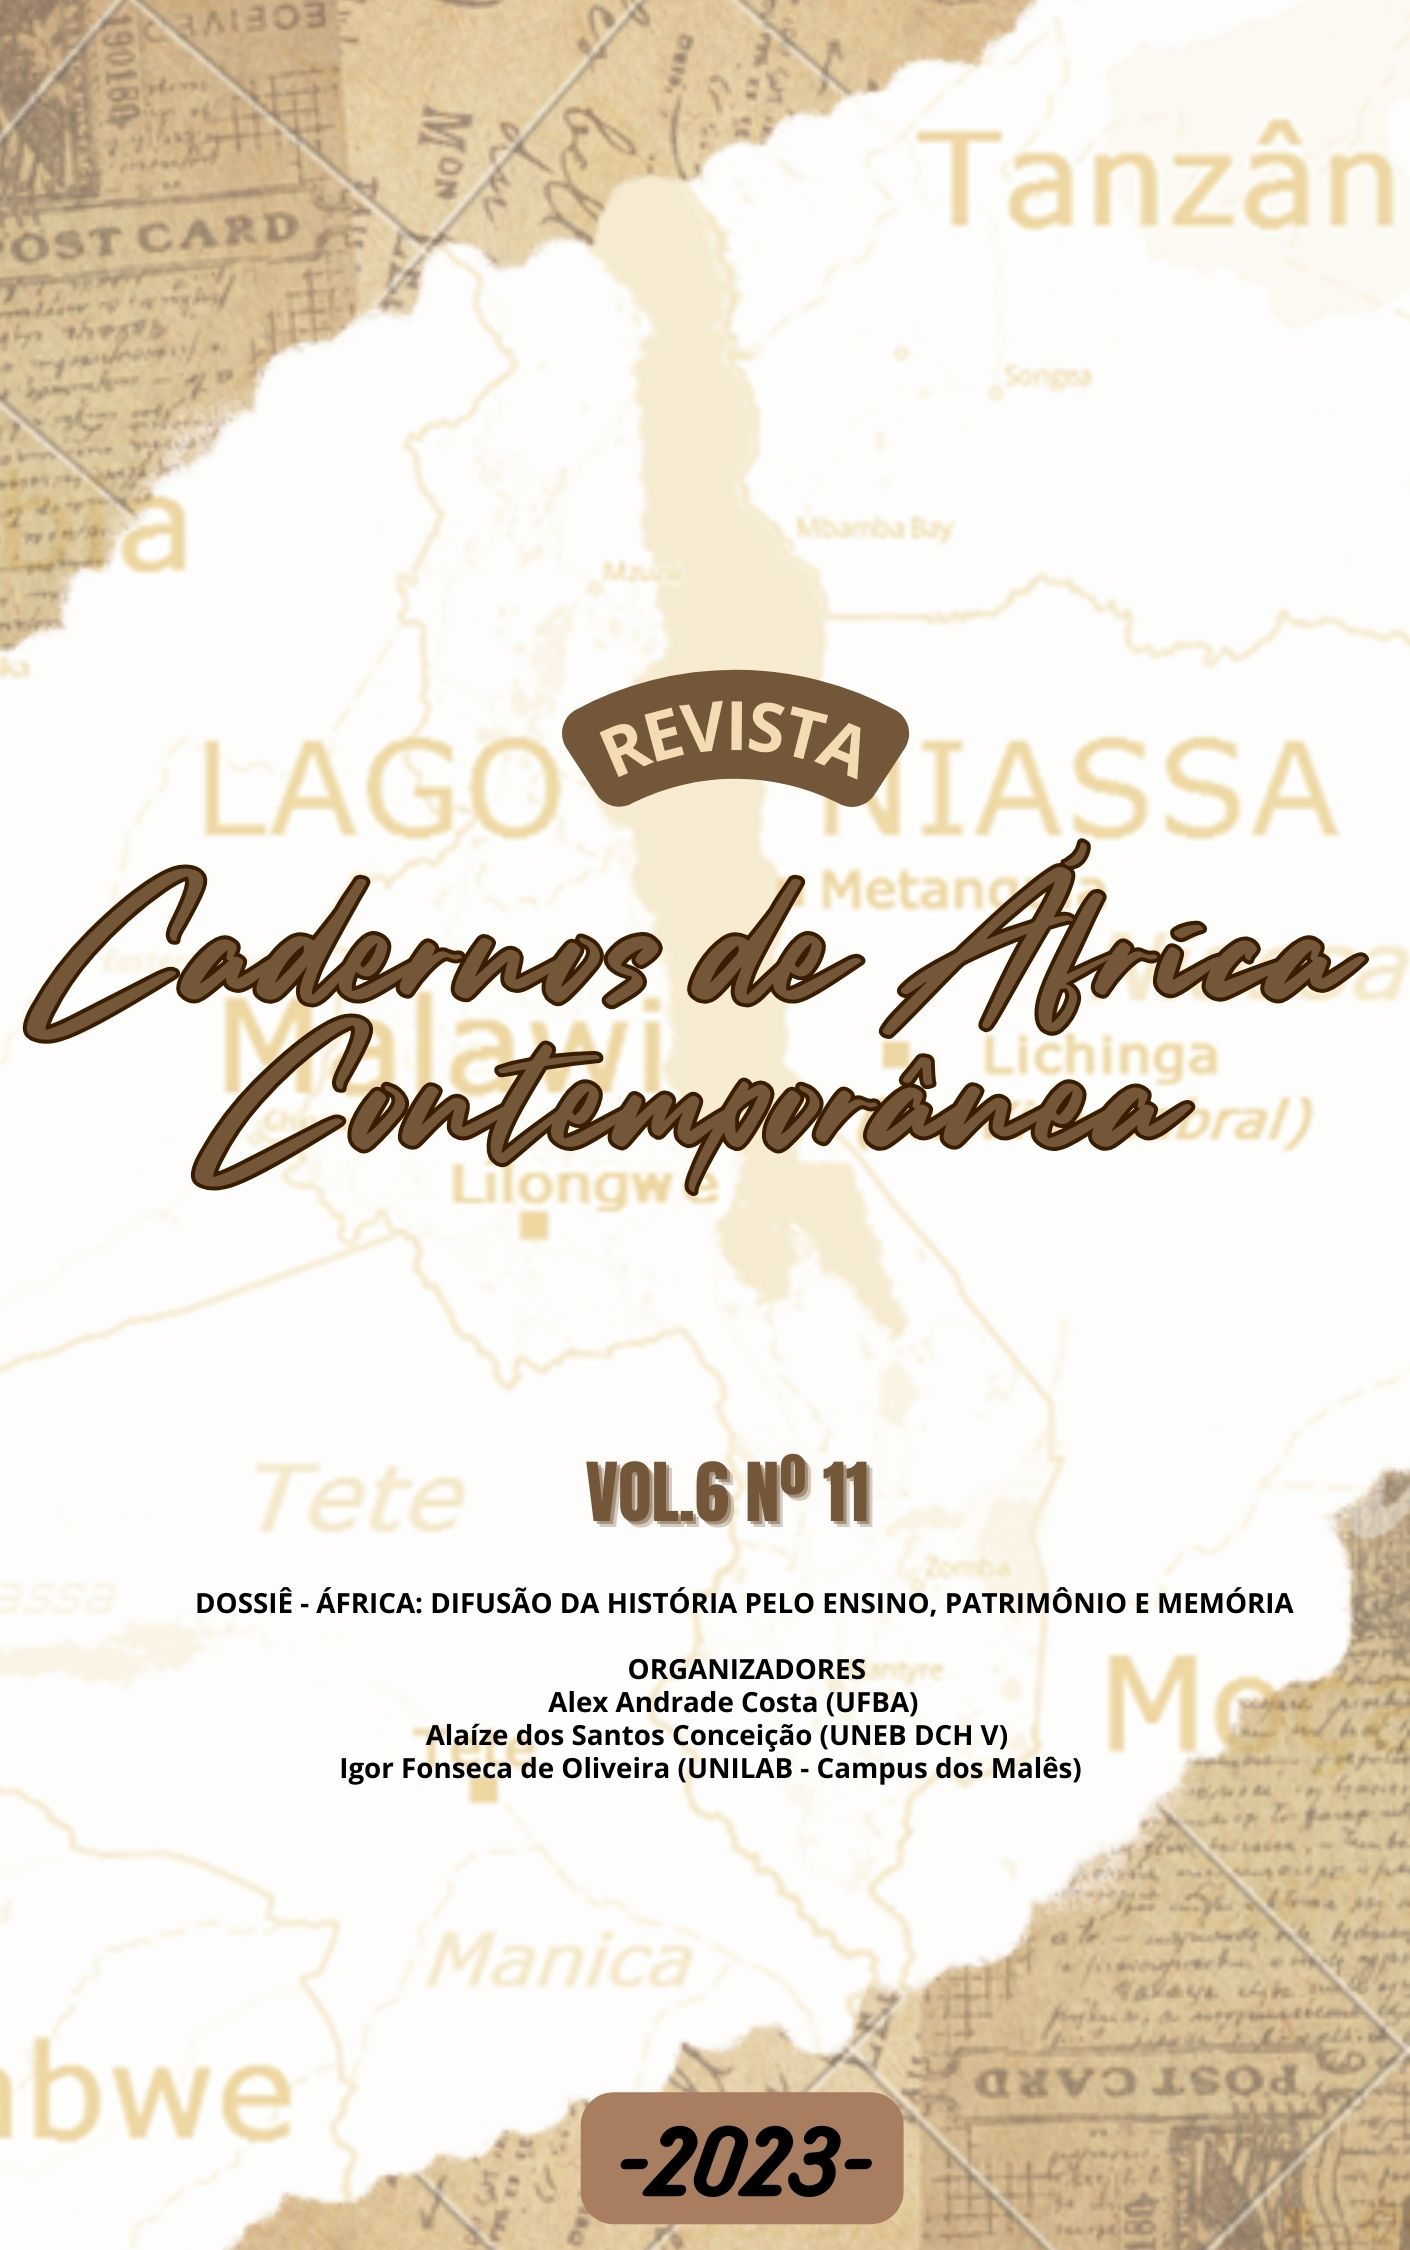 					Visualizar v. 6 n. 11 (2023): Revista Cadernos de África Contemporânea
				